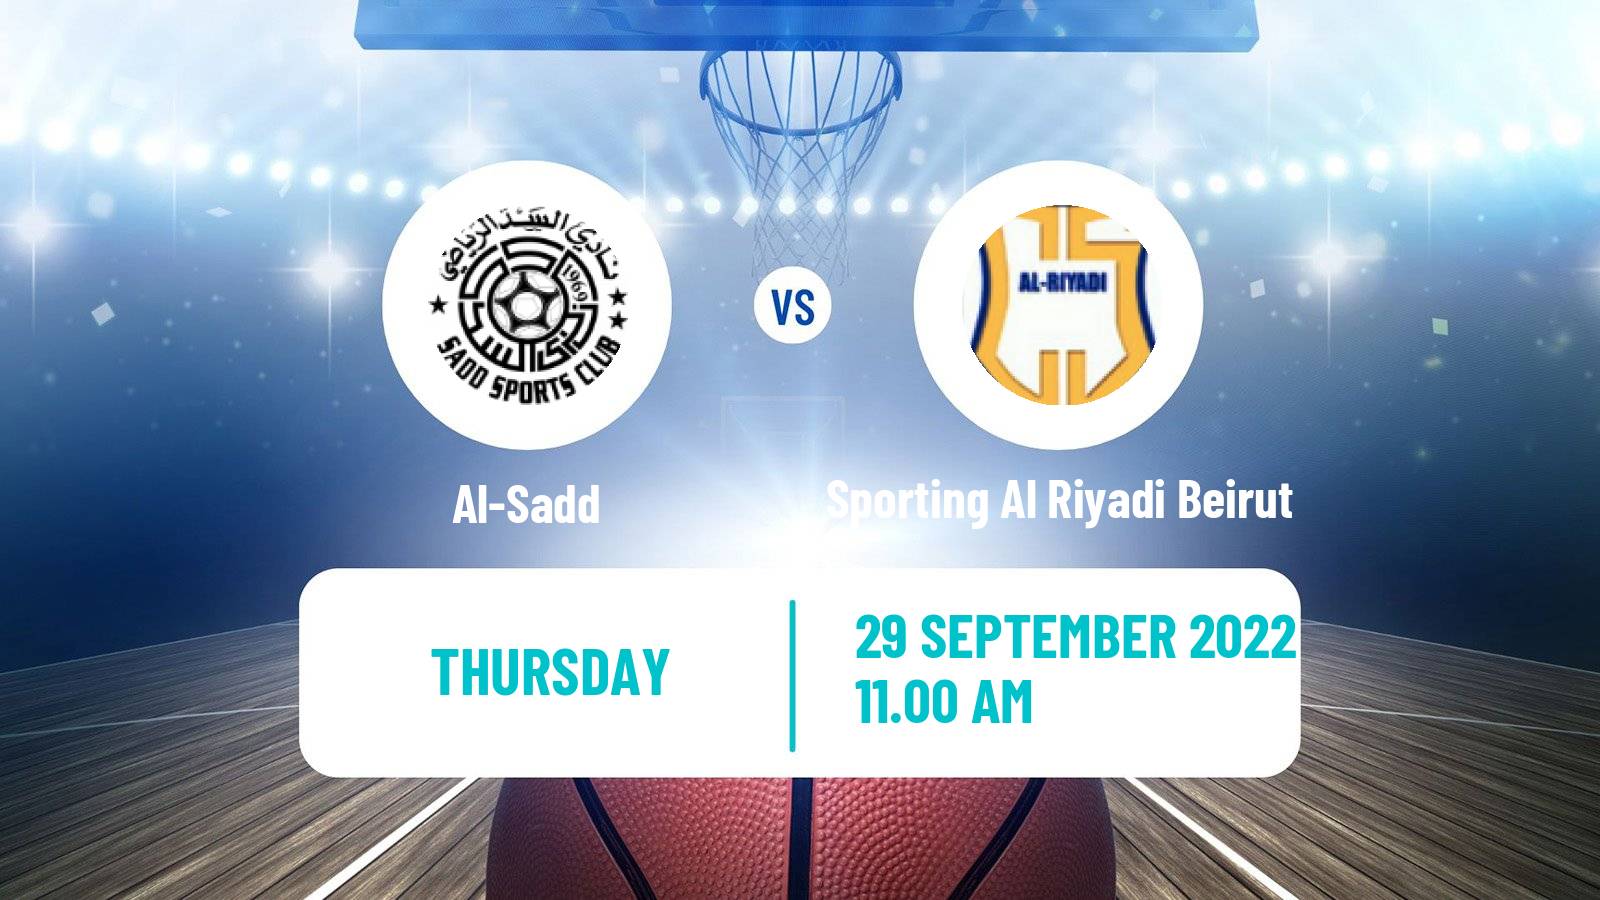 Basketball Club Friendly Basketball Al-Sadd - Sporting Al Riyadi Beirut